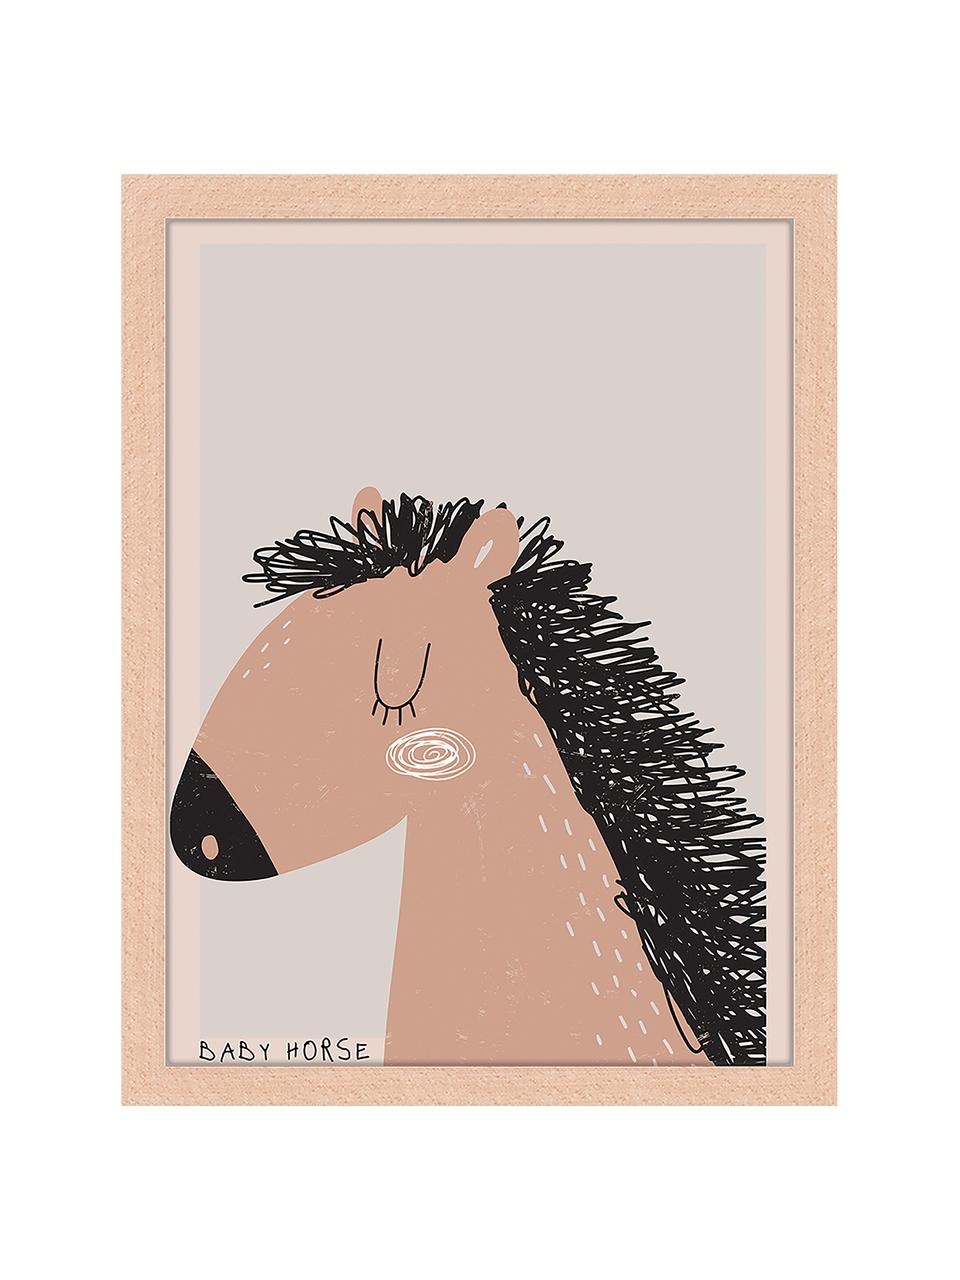 Stampa digitale incorniciata Baby Horse, Cornice: legno di faggio, certific, Immagine: stampa digitale su carta , Legno chiaro, grigio chiaro, torrone, Larg. 33 x Alt. 43 cm